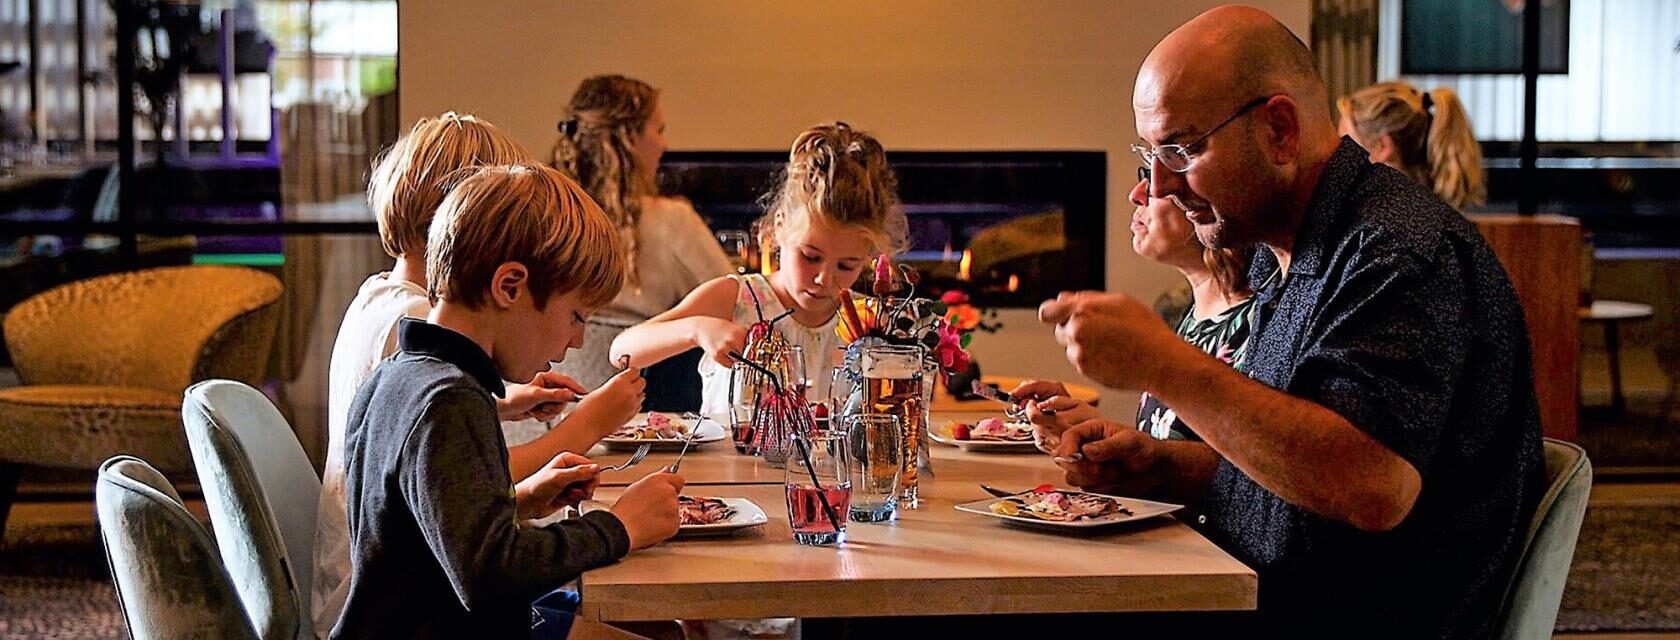 gezin eet in het restaurant